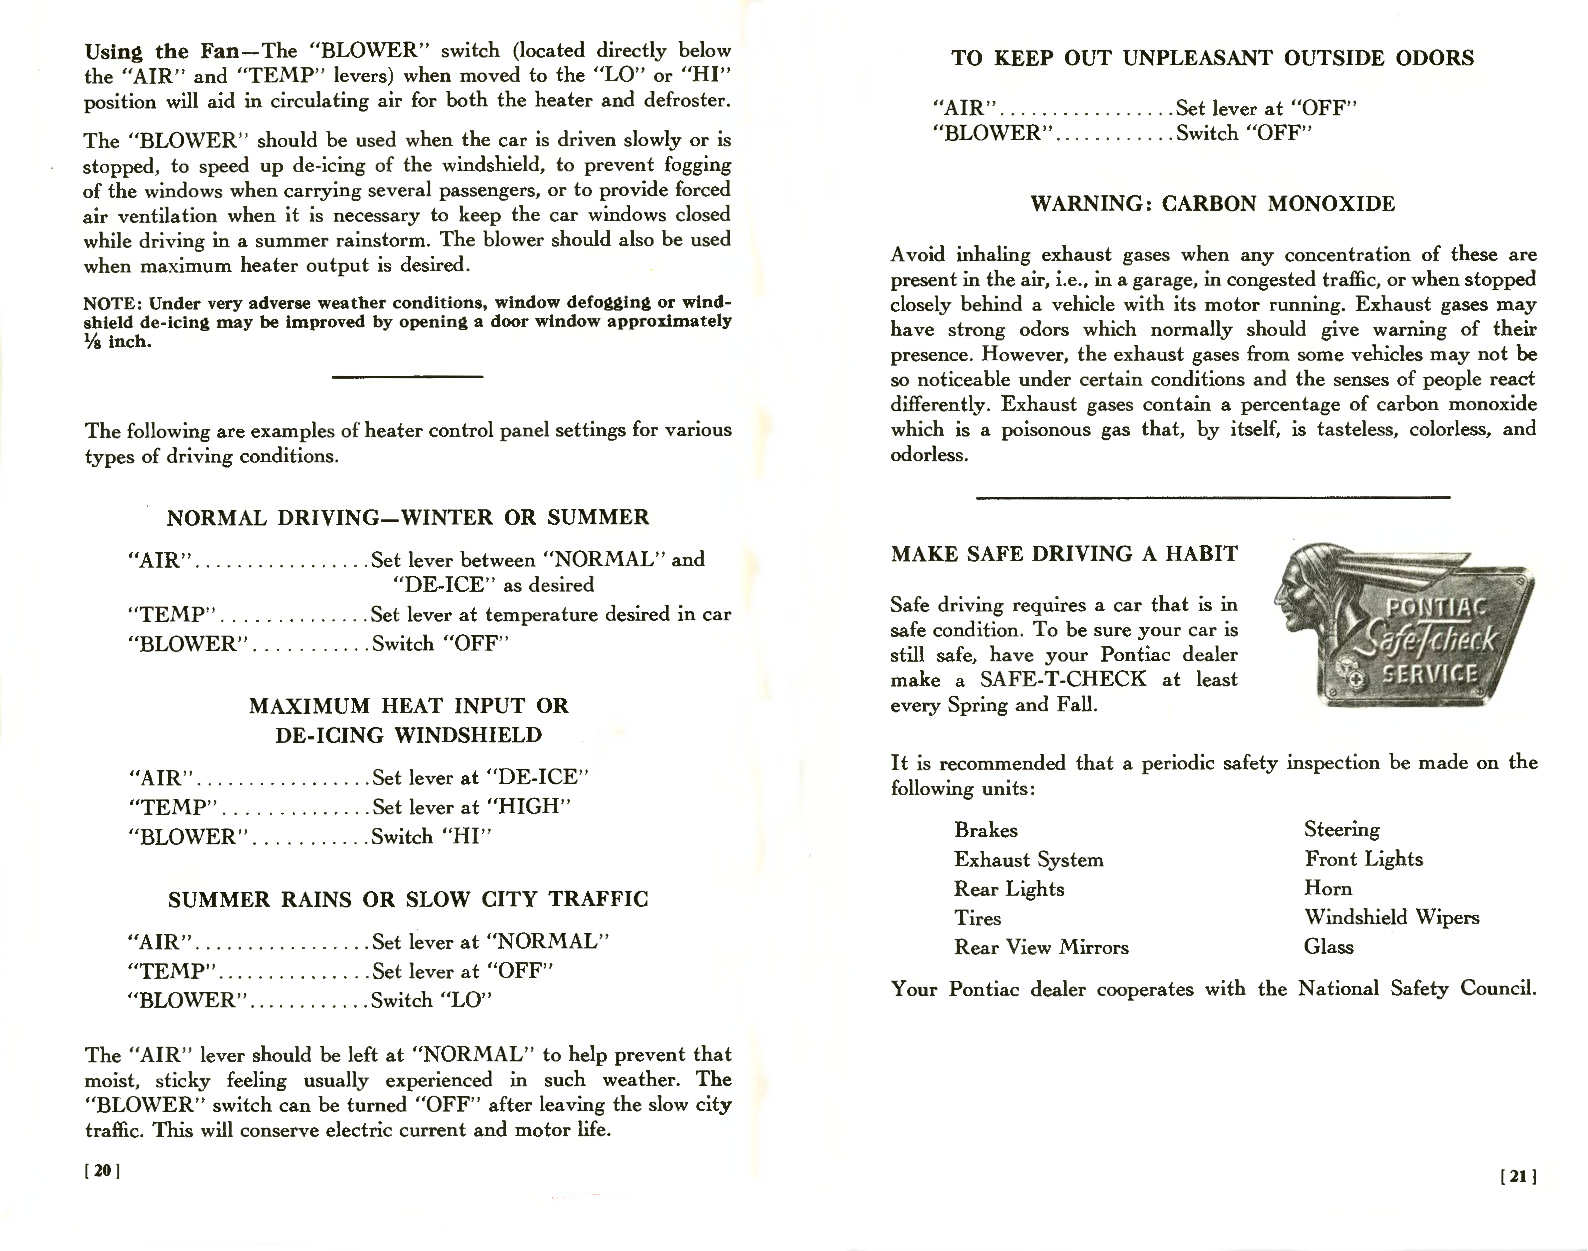 n_1957 Pontiac Owners Guide-20-21.jpg